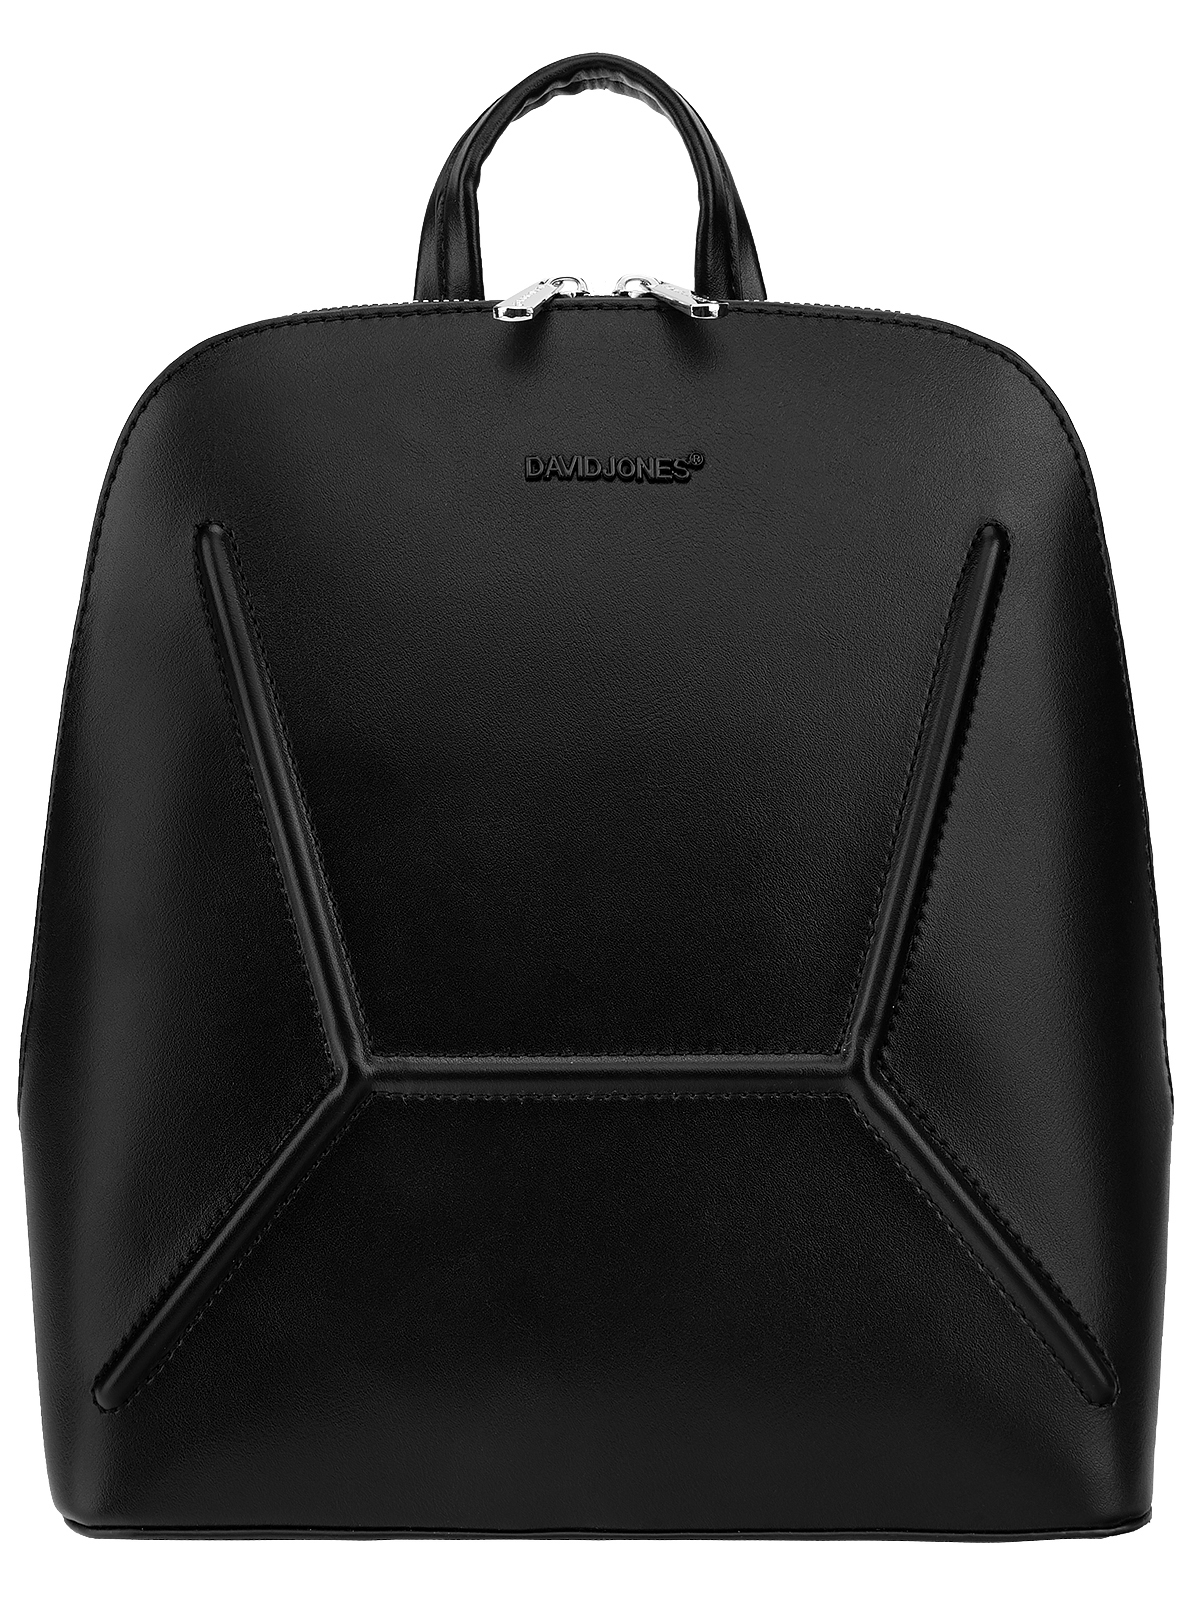 Рюкзак David Jones чёрный, 26x11x28 см, 6426-2K